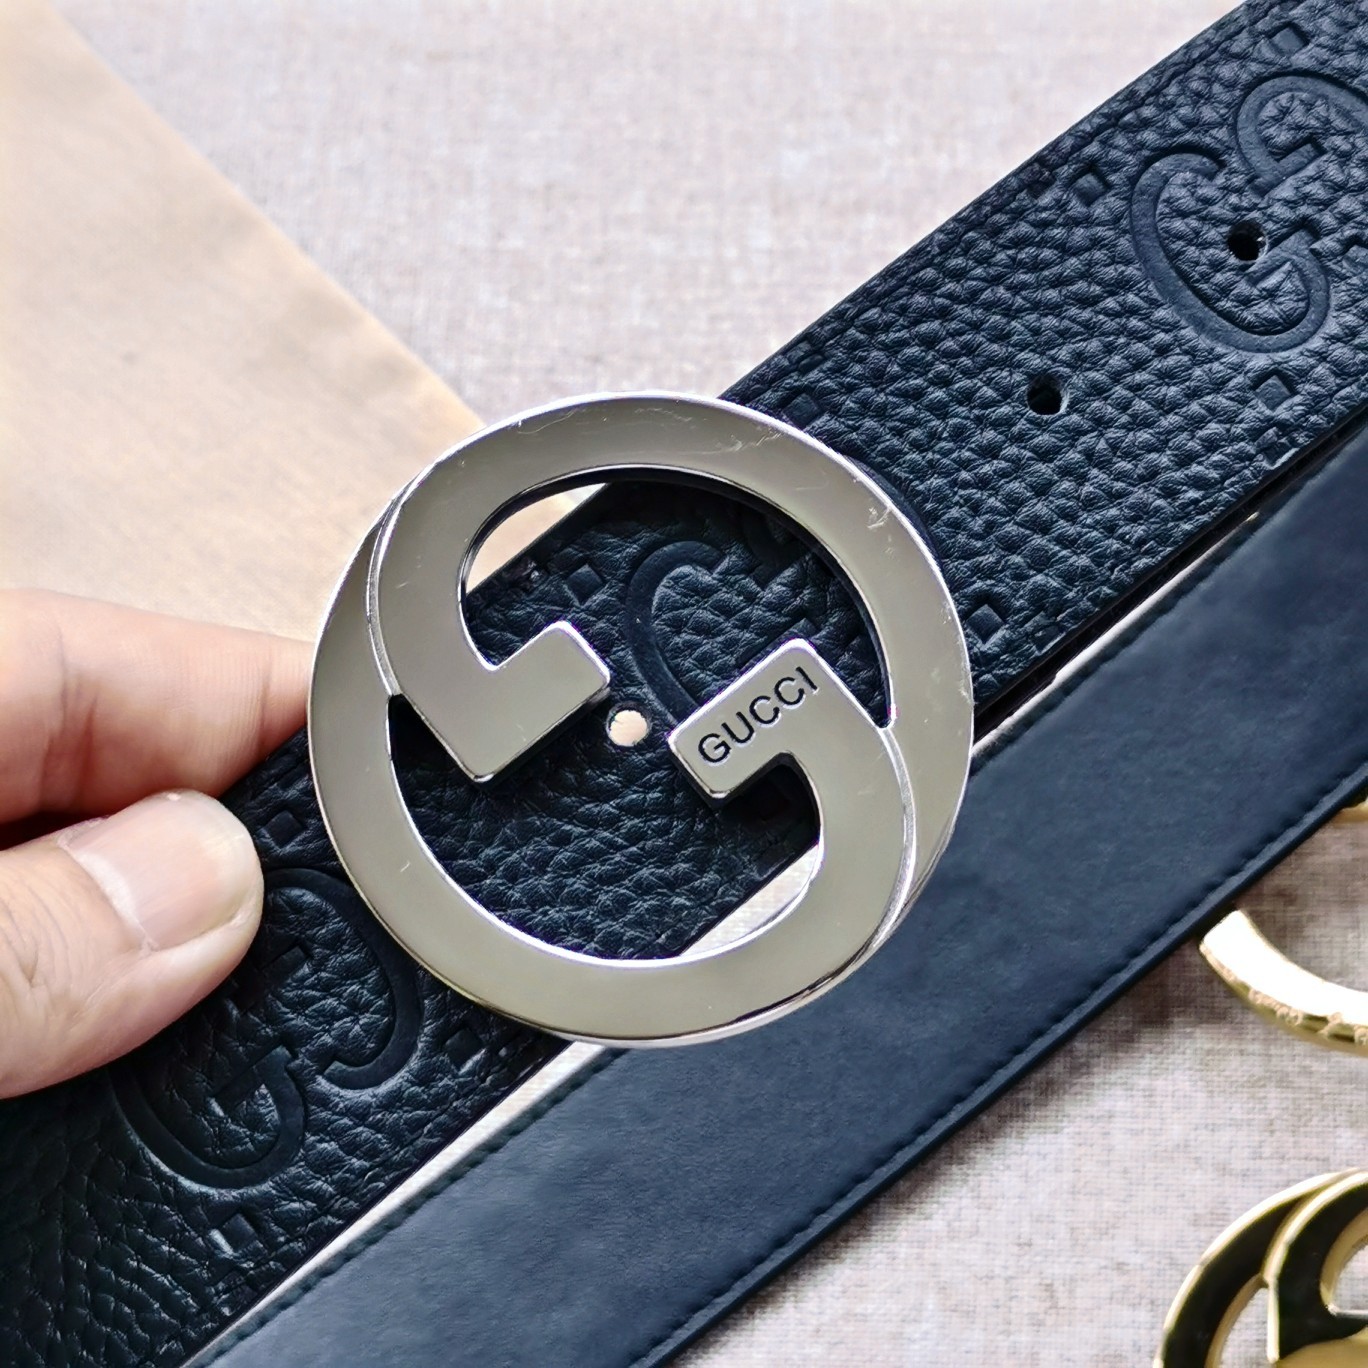 GUCCI[正]互扣式双G带扣腰带采用热压印技术的GucciSignature皮革精制而成触感厚实印花图